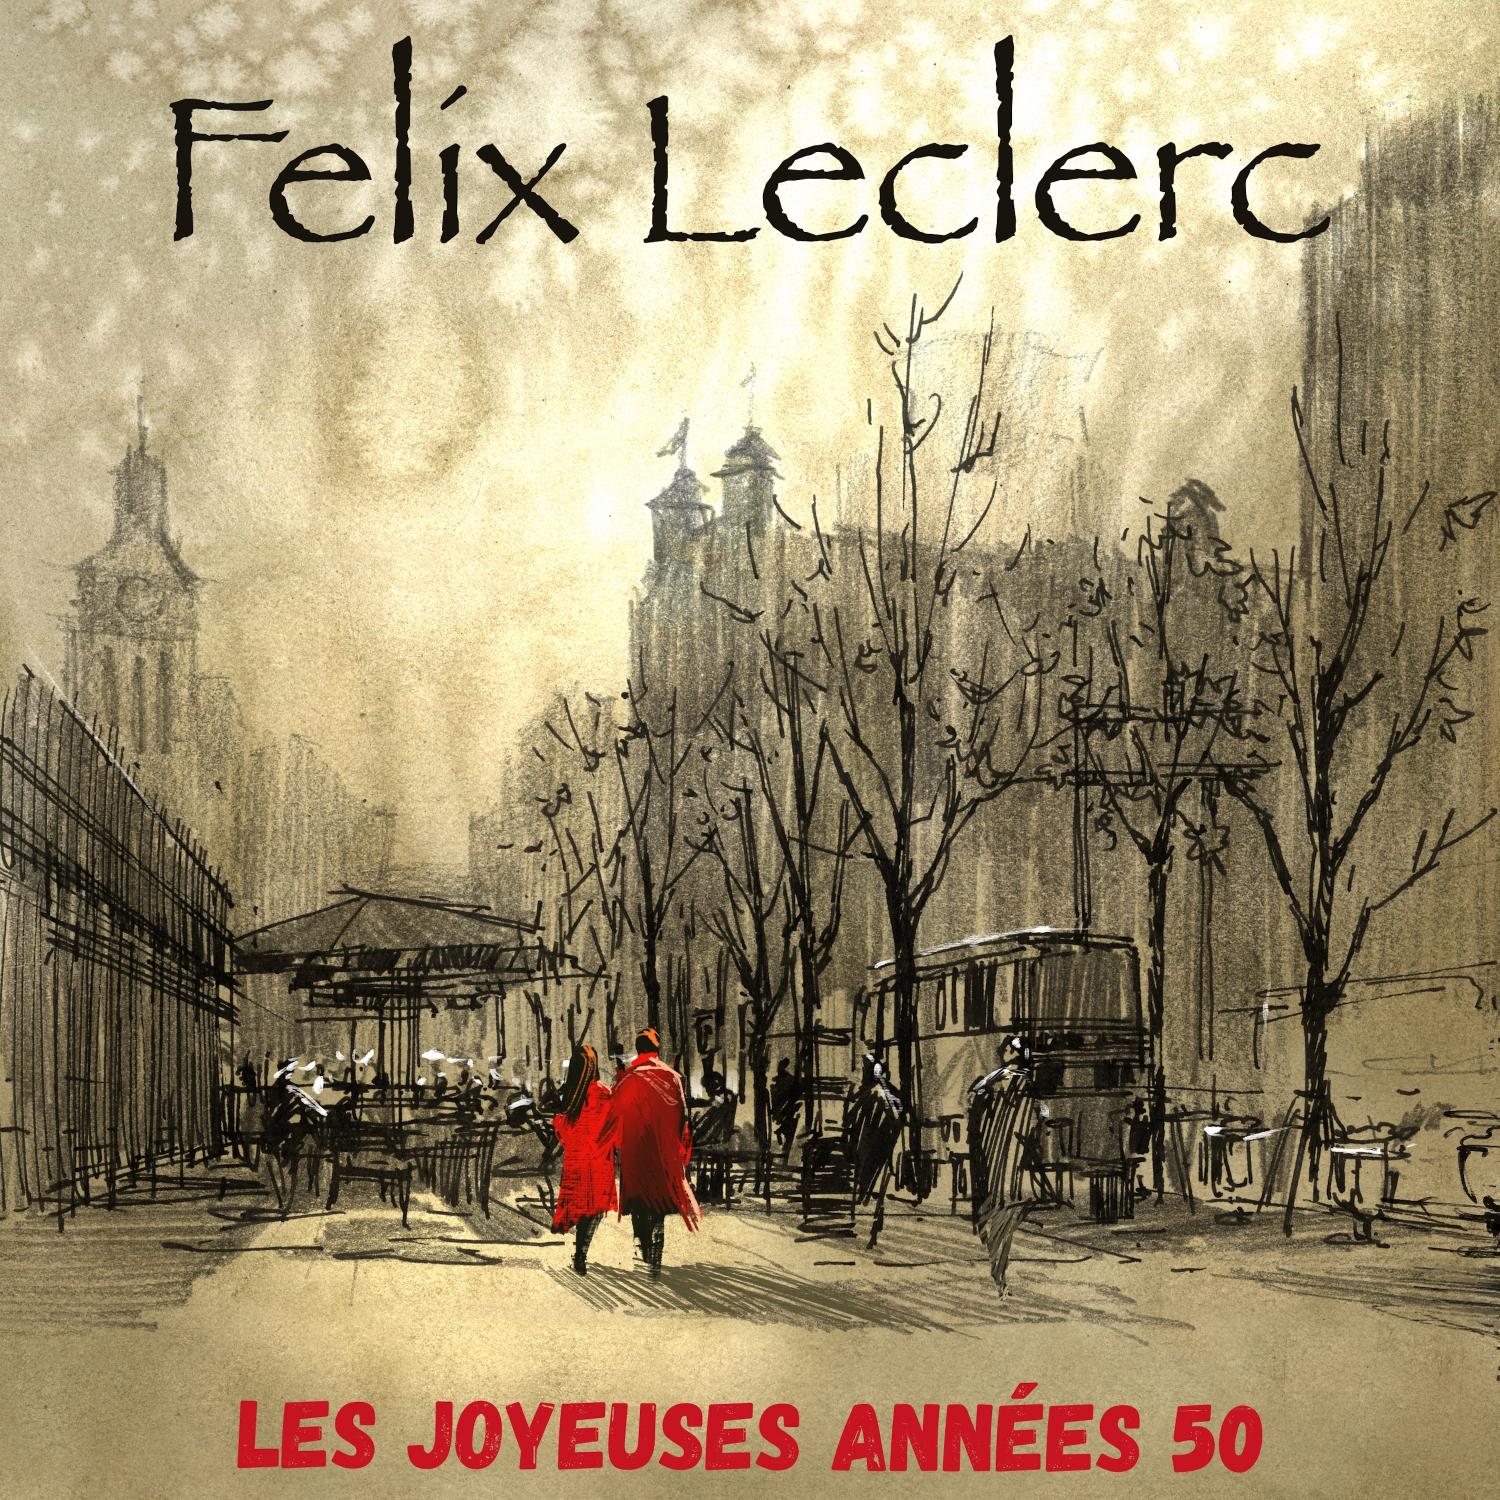 Felix Leclerc - L' homme au velo